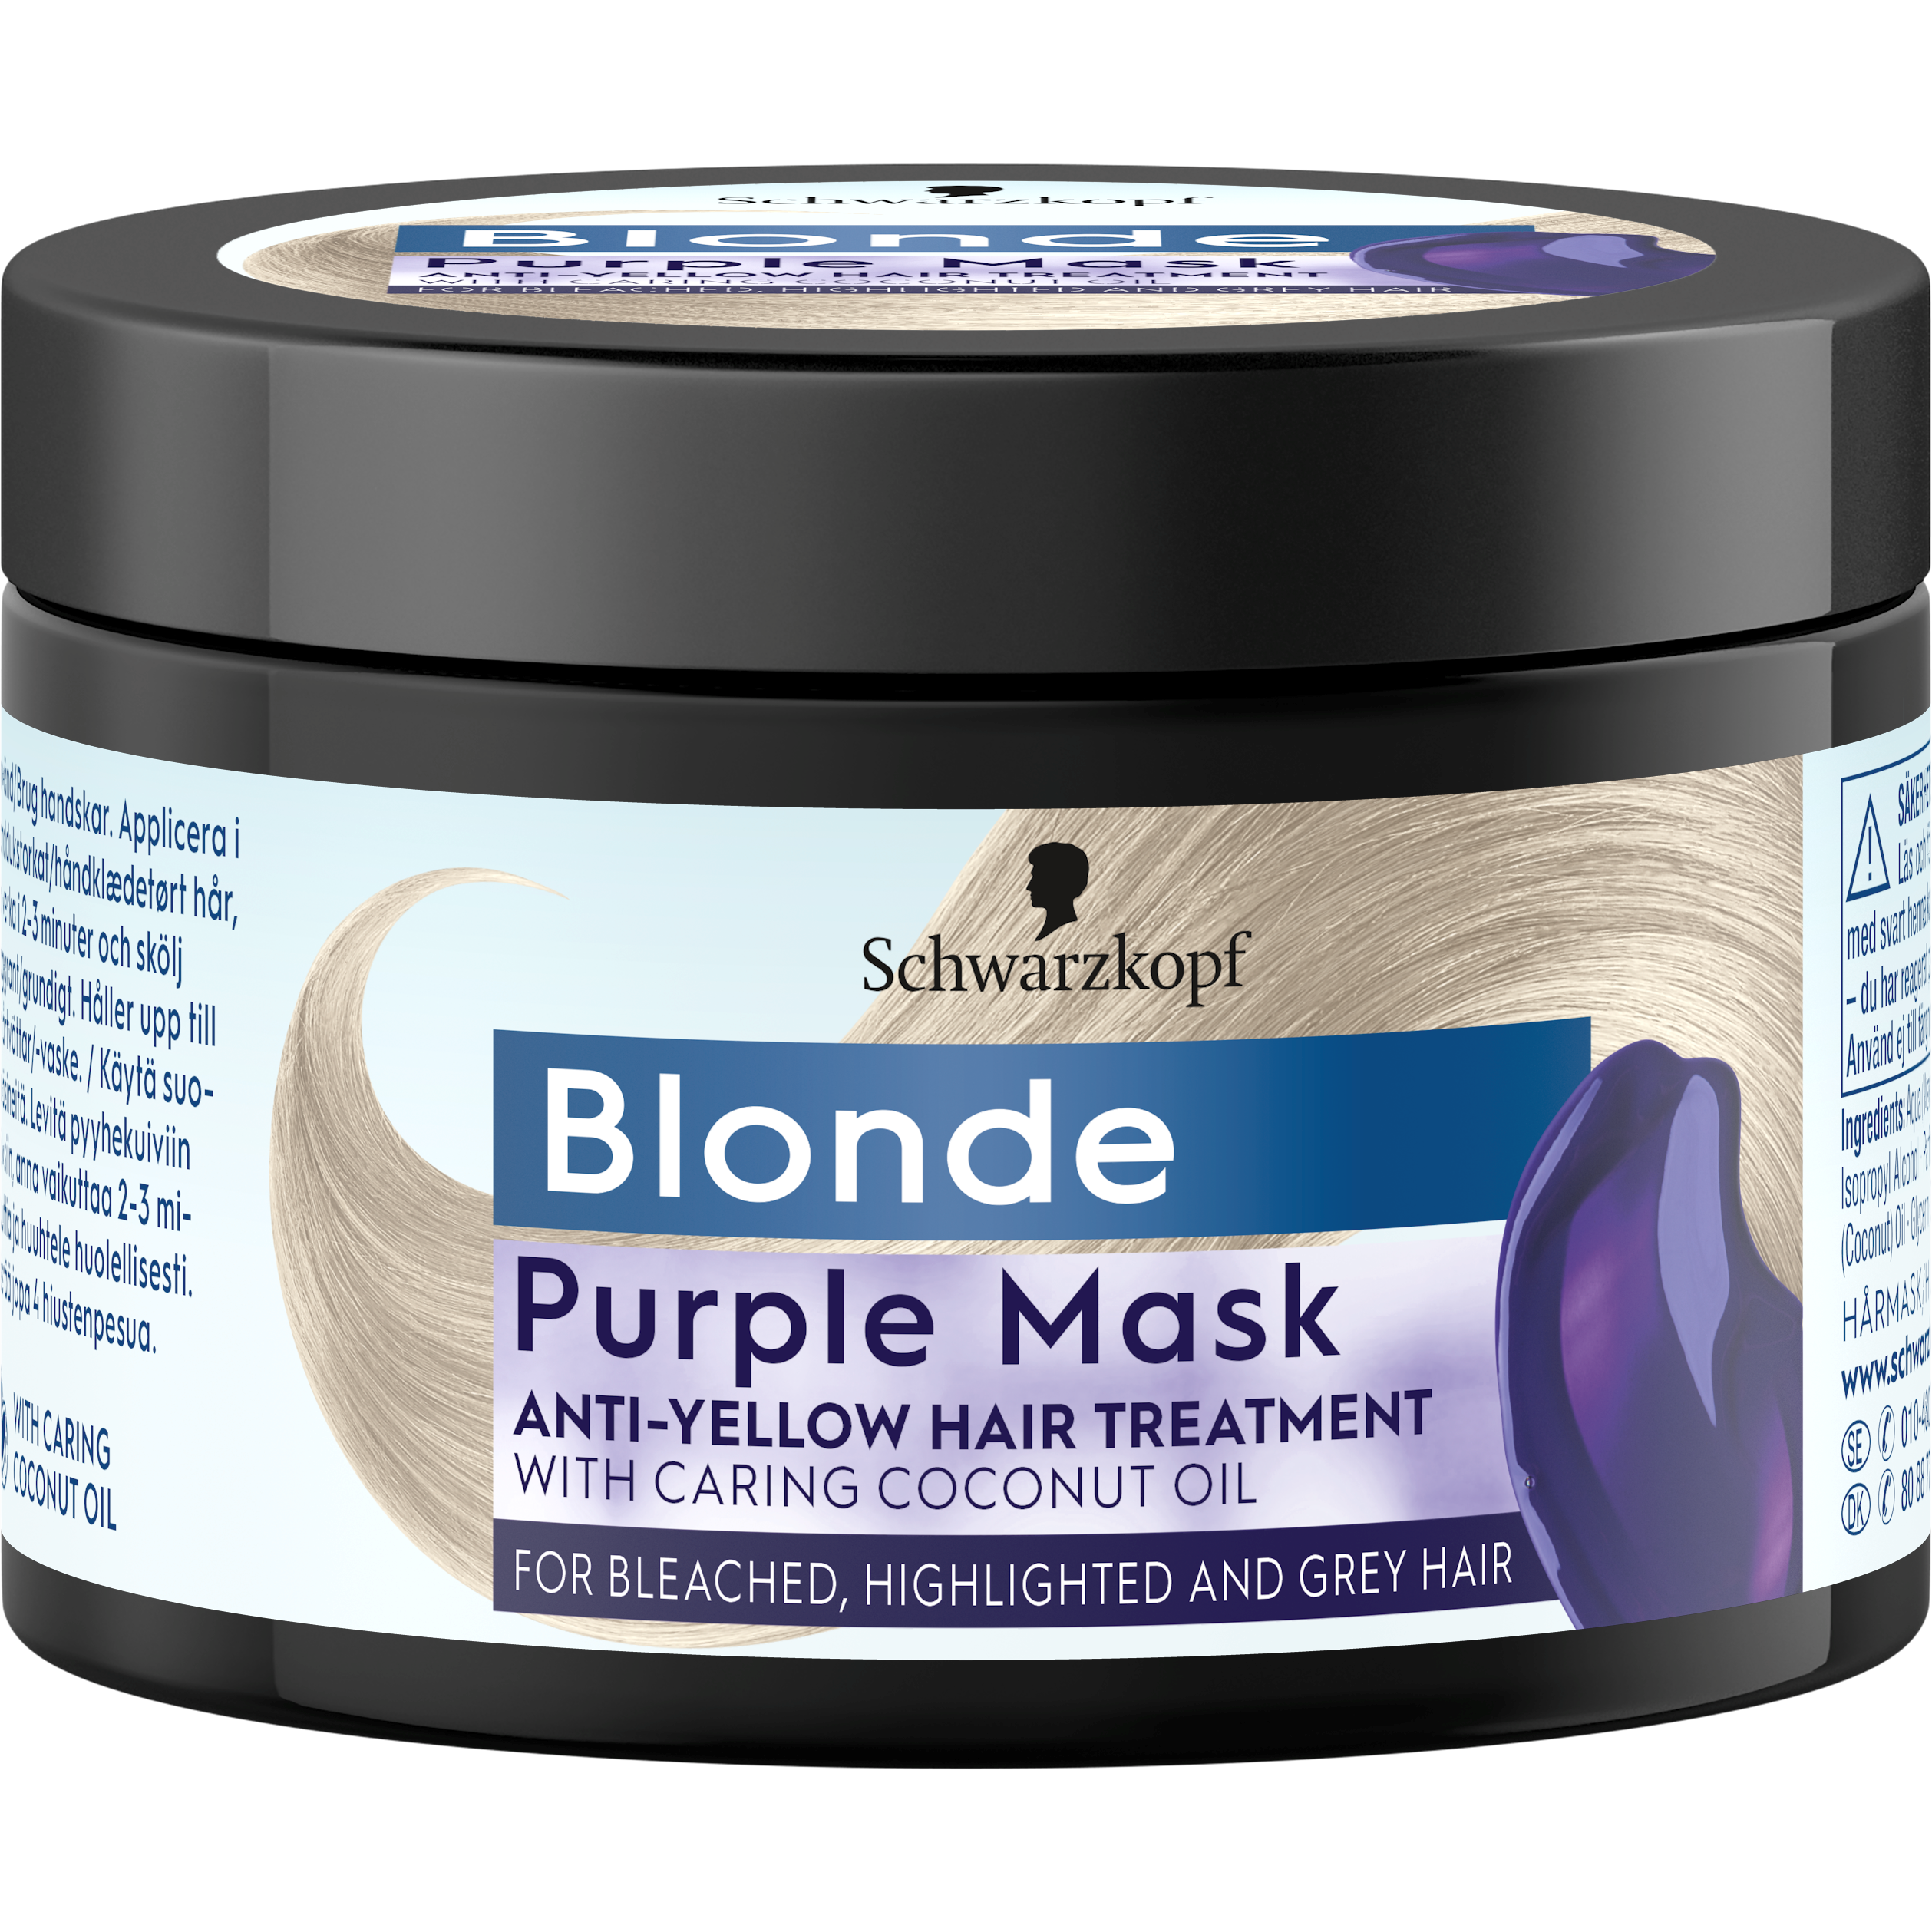 Zdjęcia - Szampon Schwarzkopf Blonde Purple Mask - Maska do włosów 150 ml 